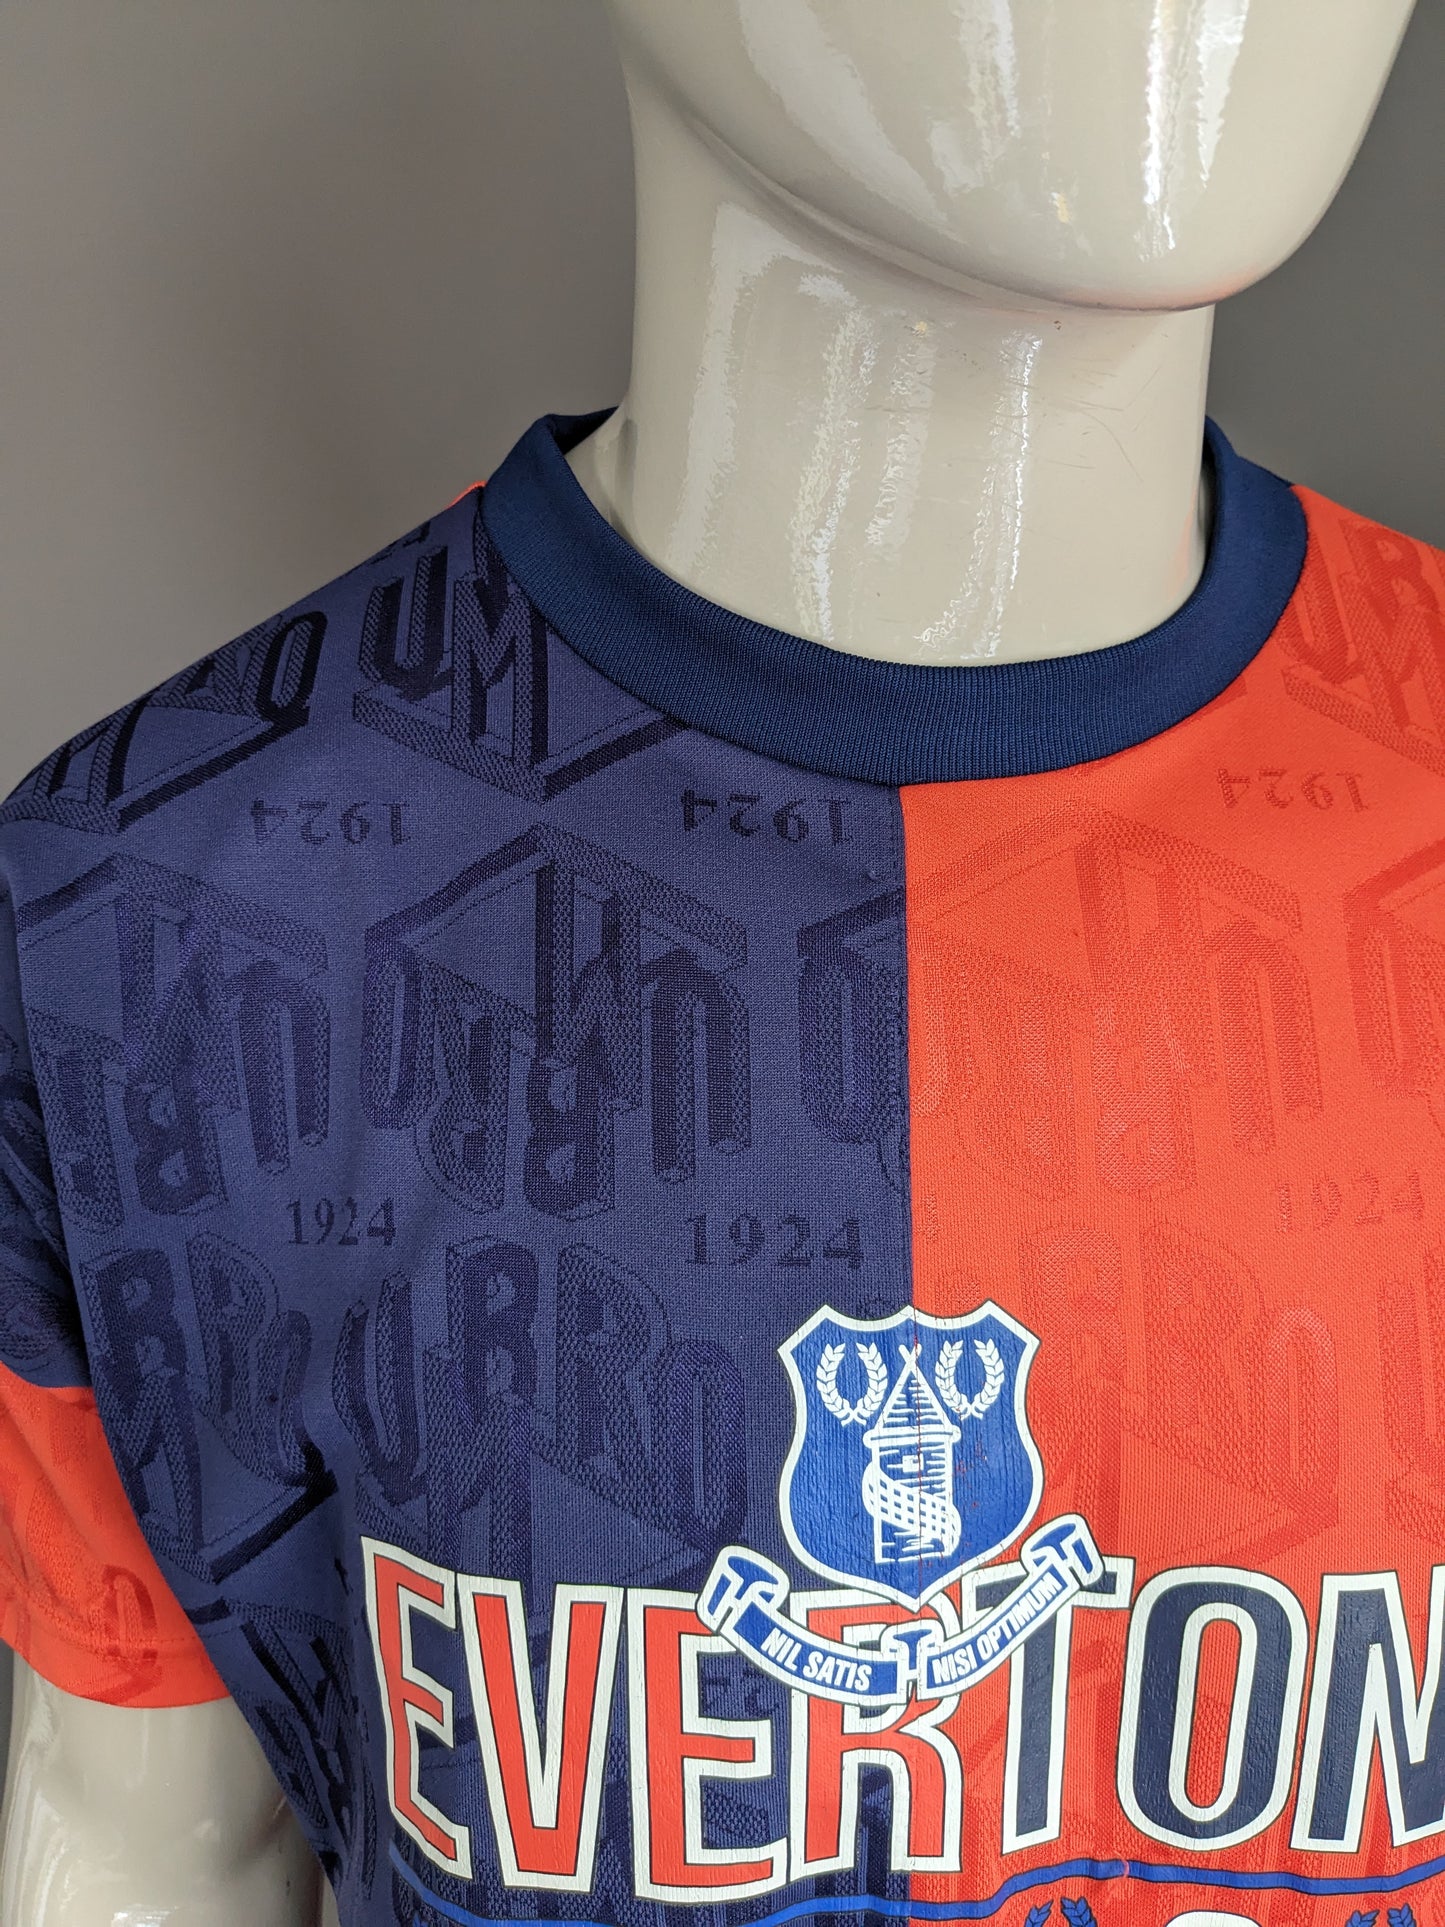 Shirt sportivo Umbro Everton vintage. Motivo colorato arancione blu. Dimensioni (S) / L.